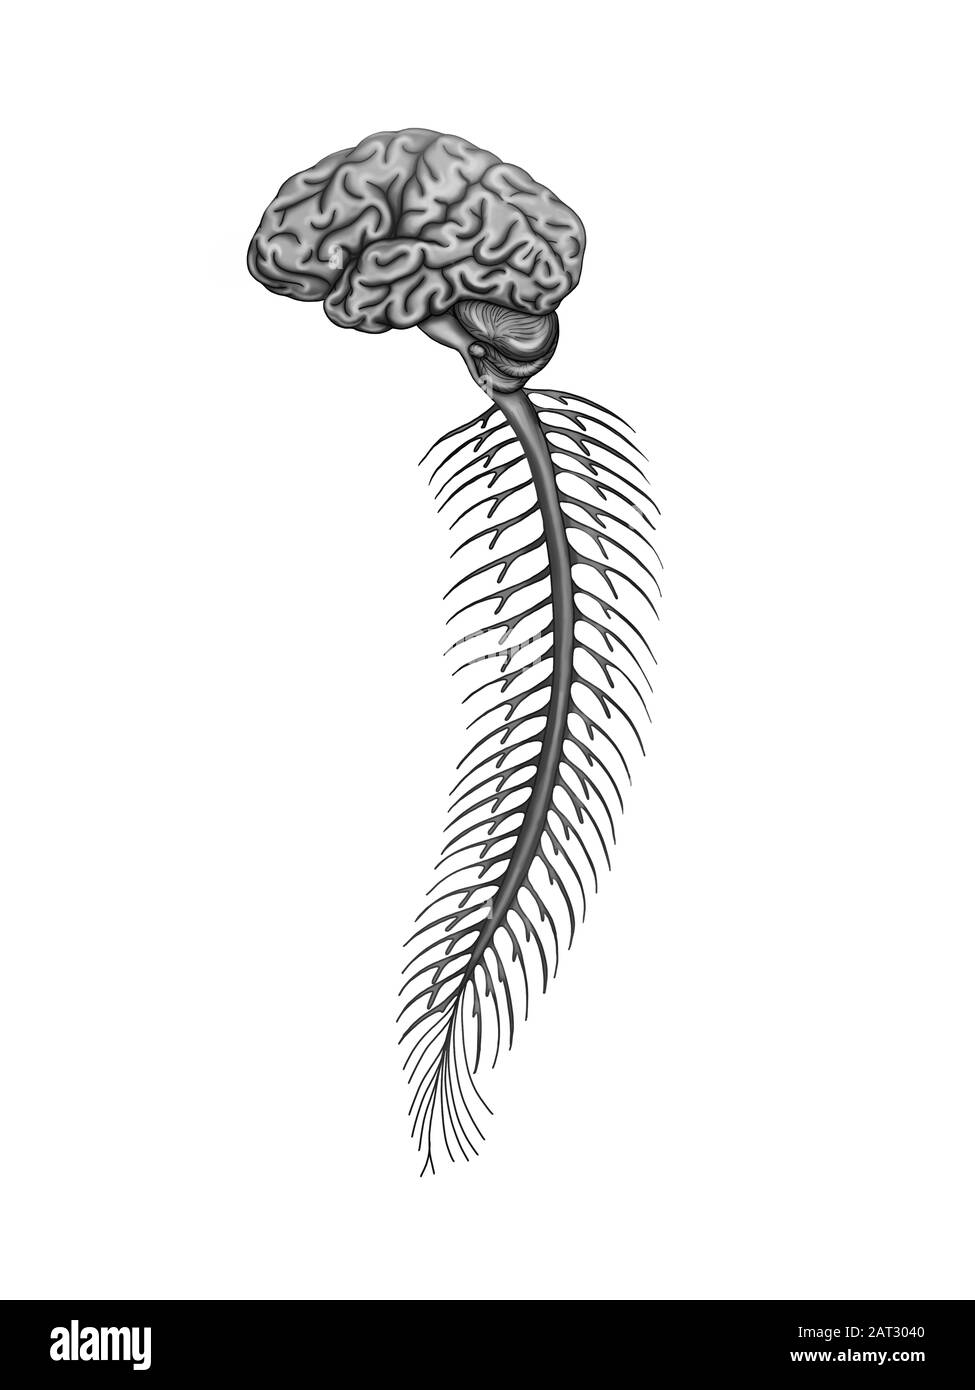 Ilustración de la médula espinal